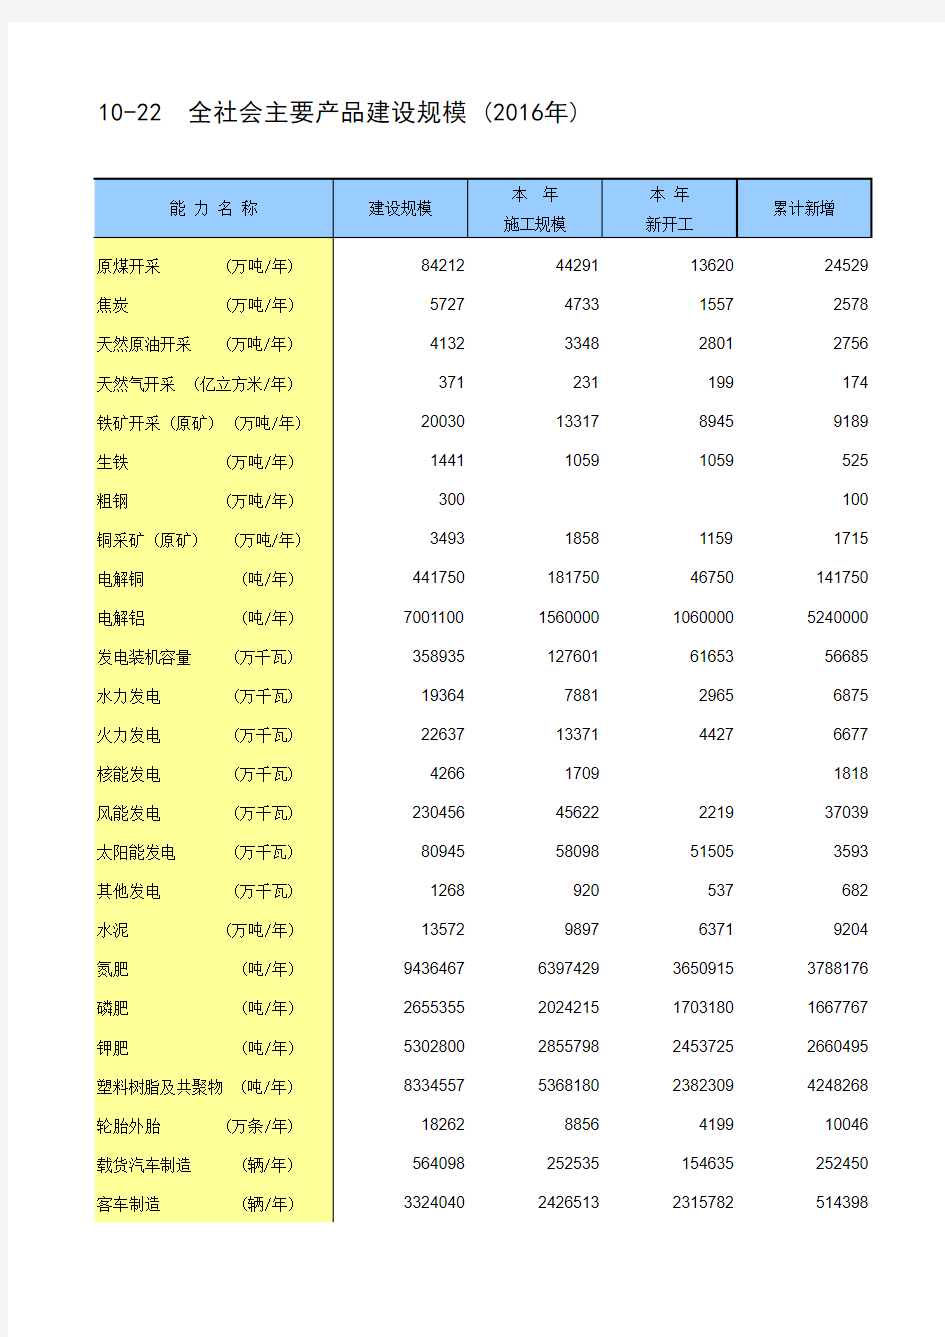 中国统计年鉴2017全国各省市区社会经济发展指标：全社会主要产品建设规模(2016年)